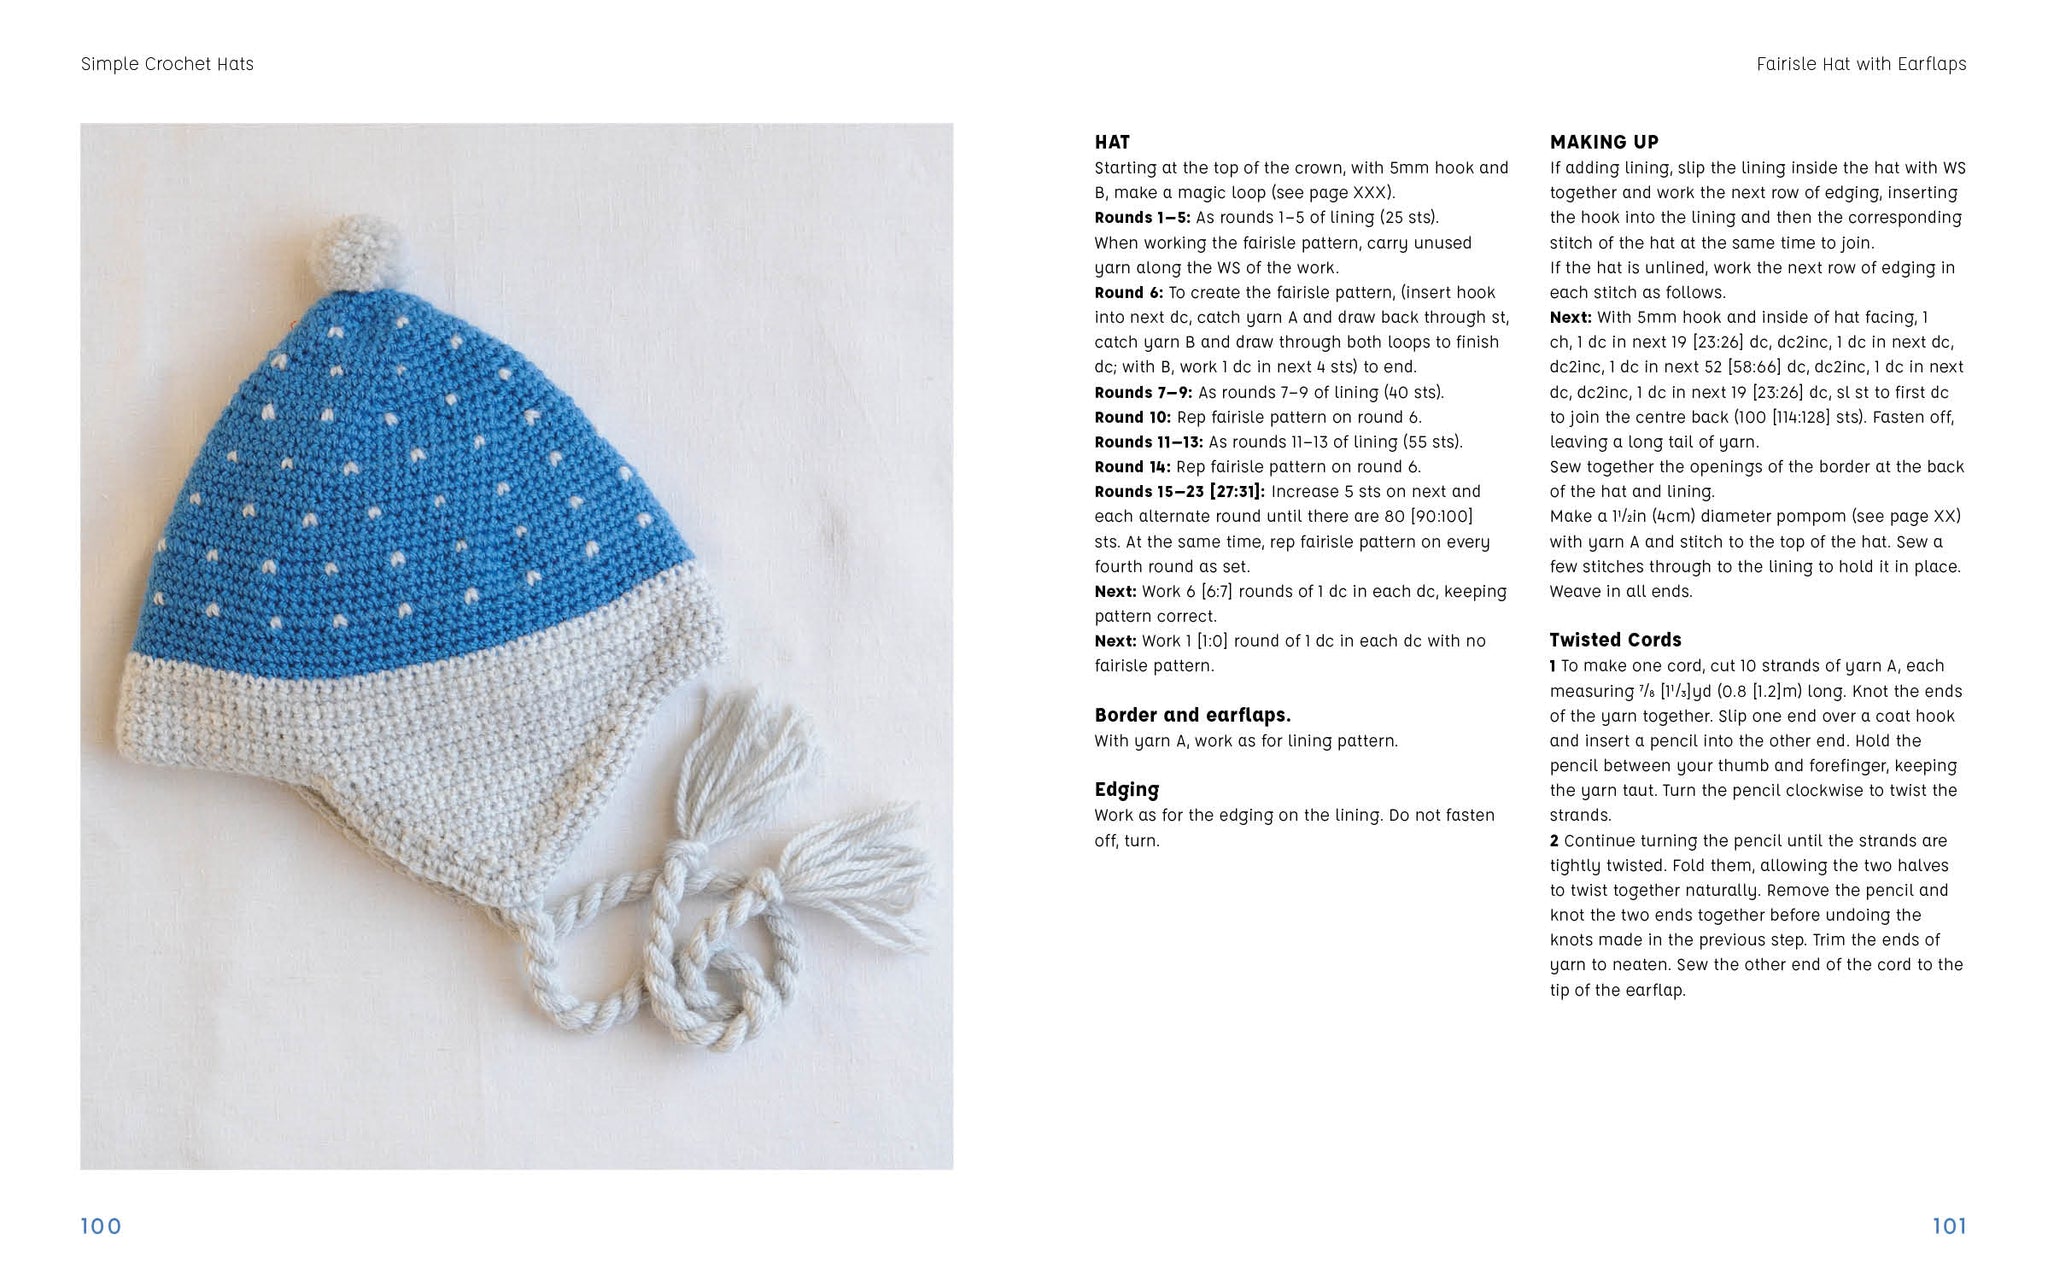 Crochet Hats: 10 Easy Crochet Hat Patterns For Beginners (Paperback), Octavia Books